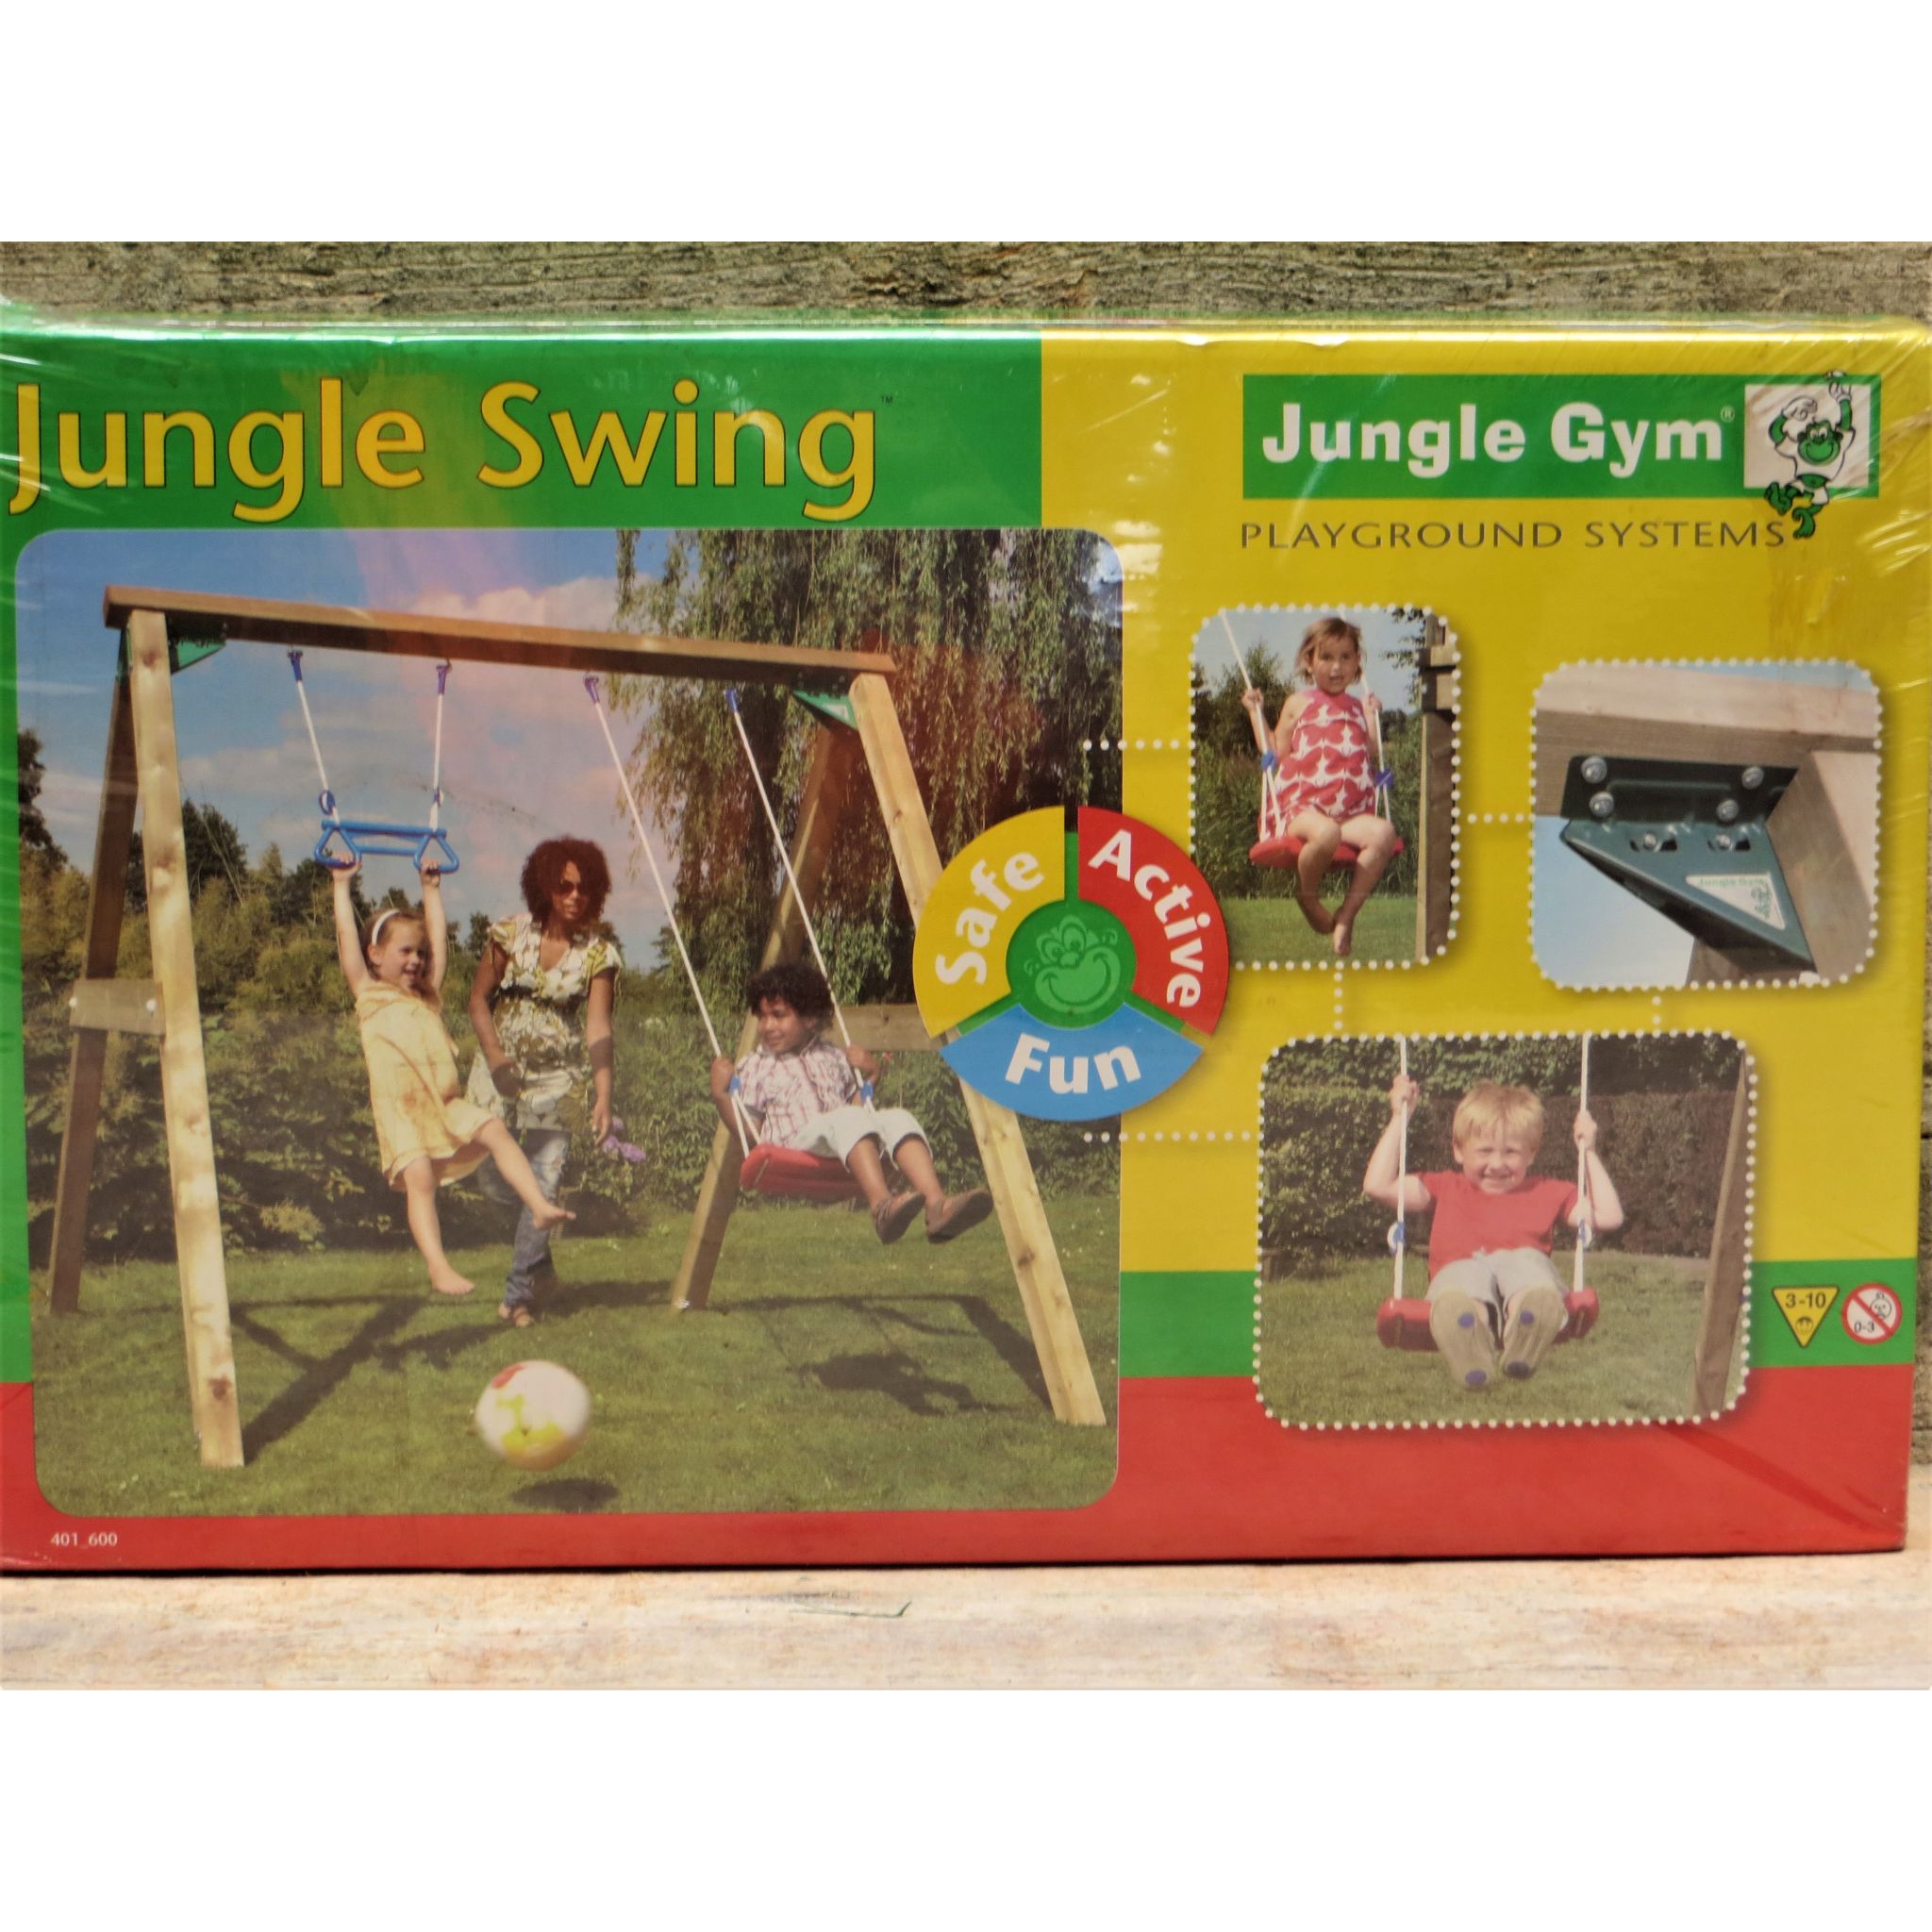 Aangenaam kennis te maken Toezicht houden Ecologie Jungle gym swing 50% korting - Tuincentrum het Oosten